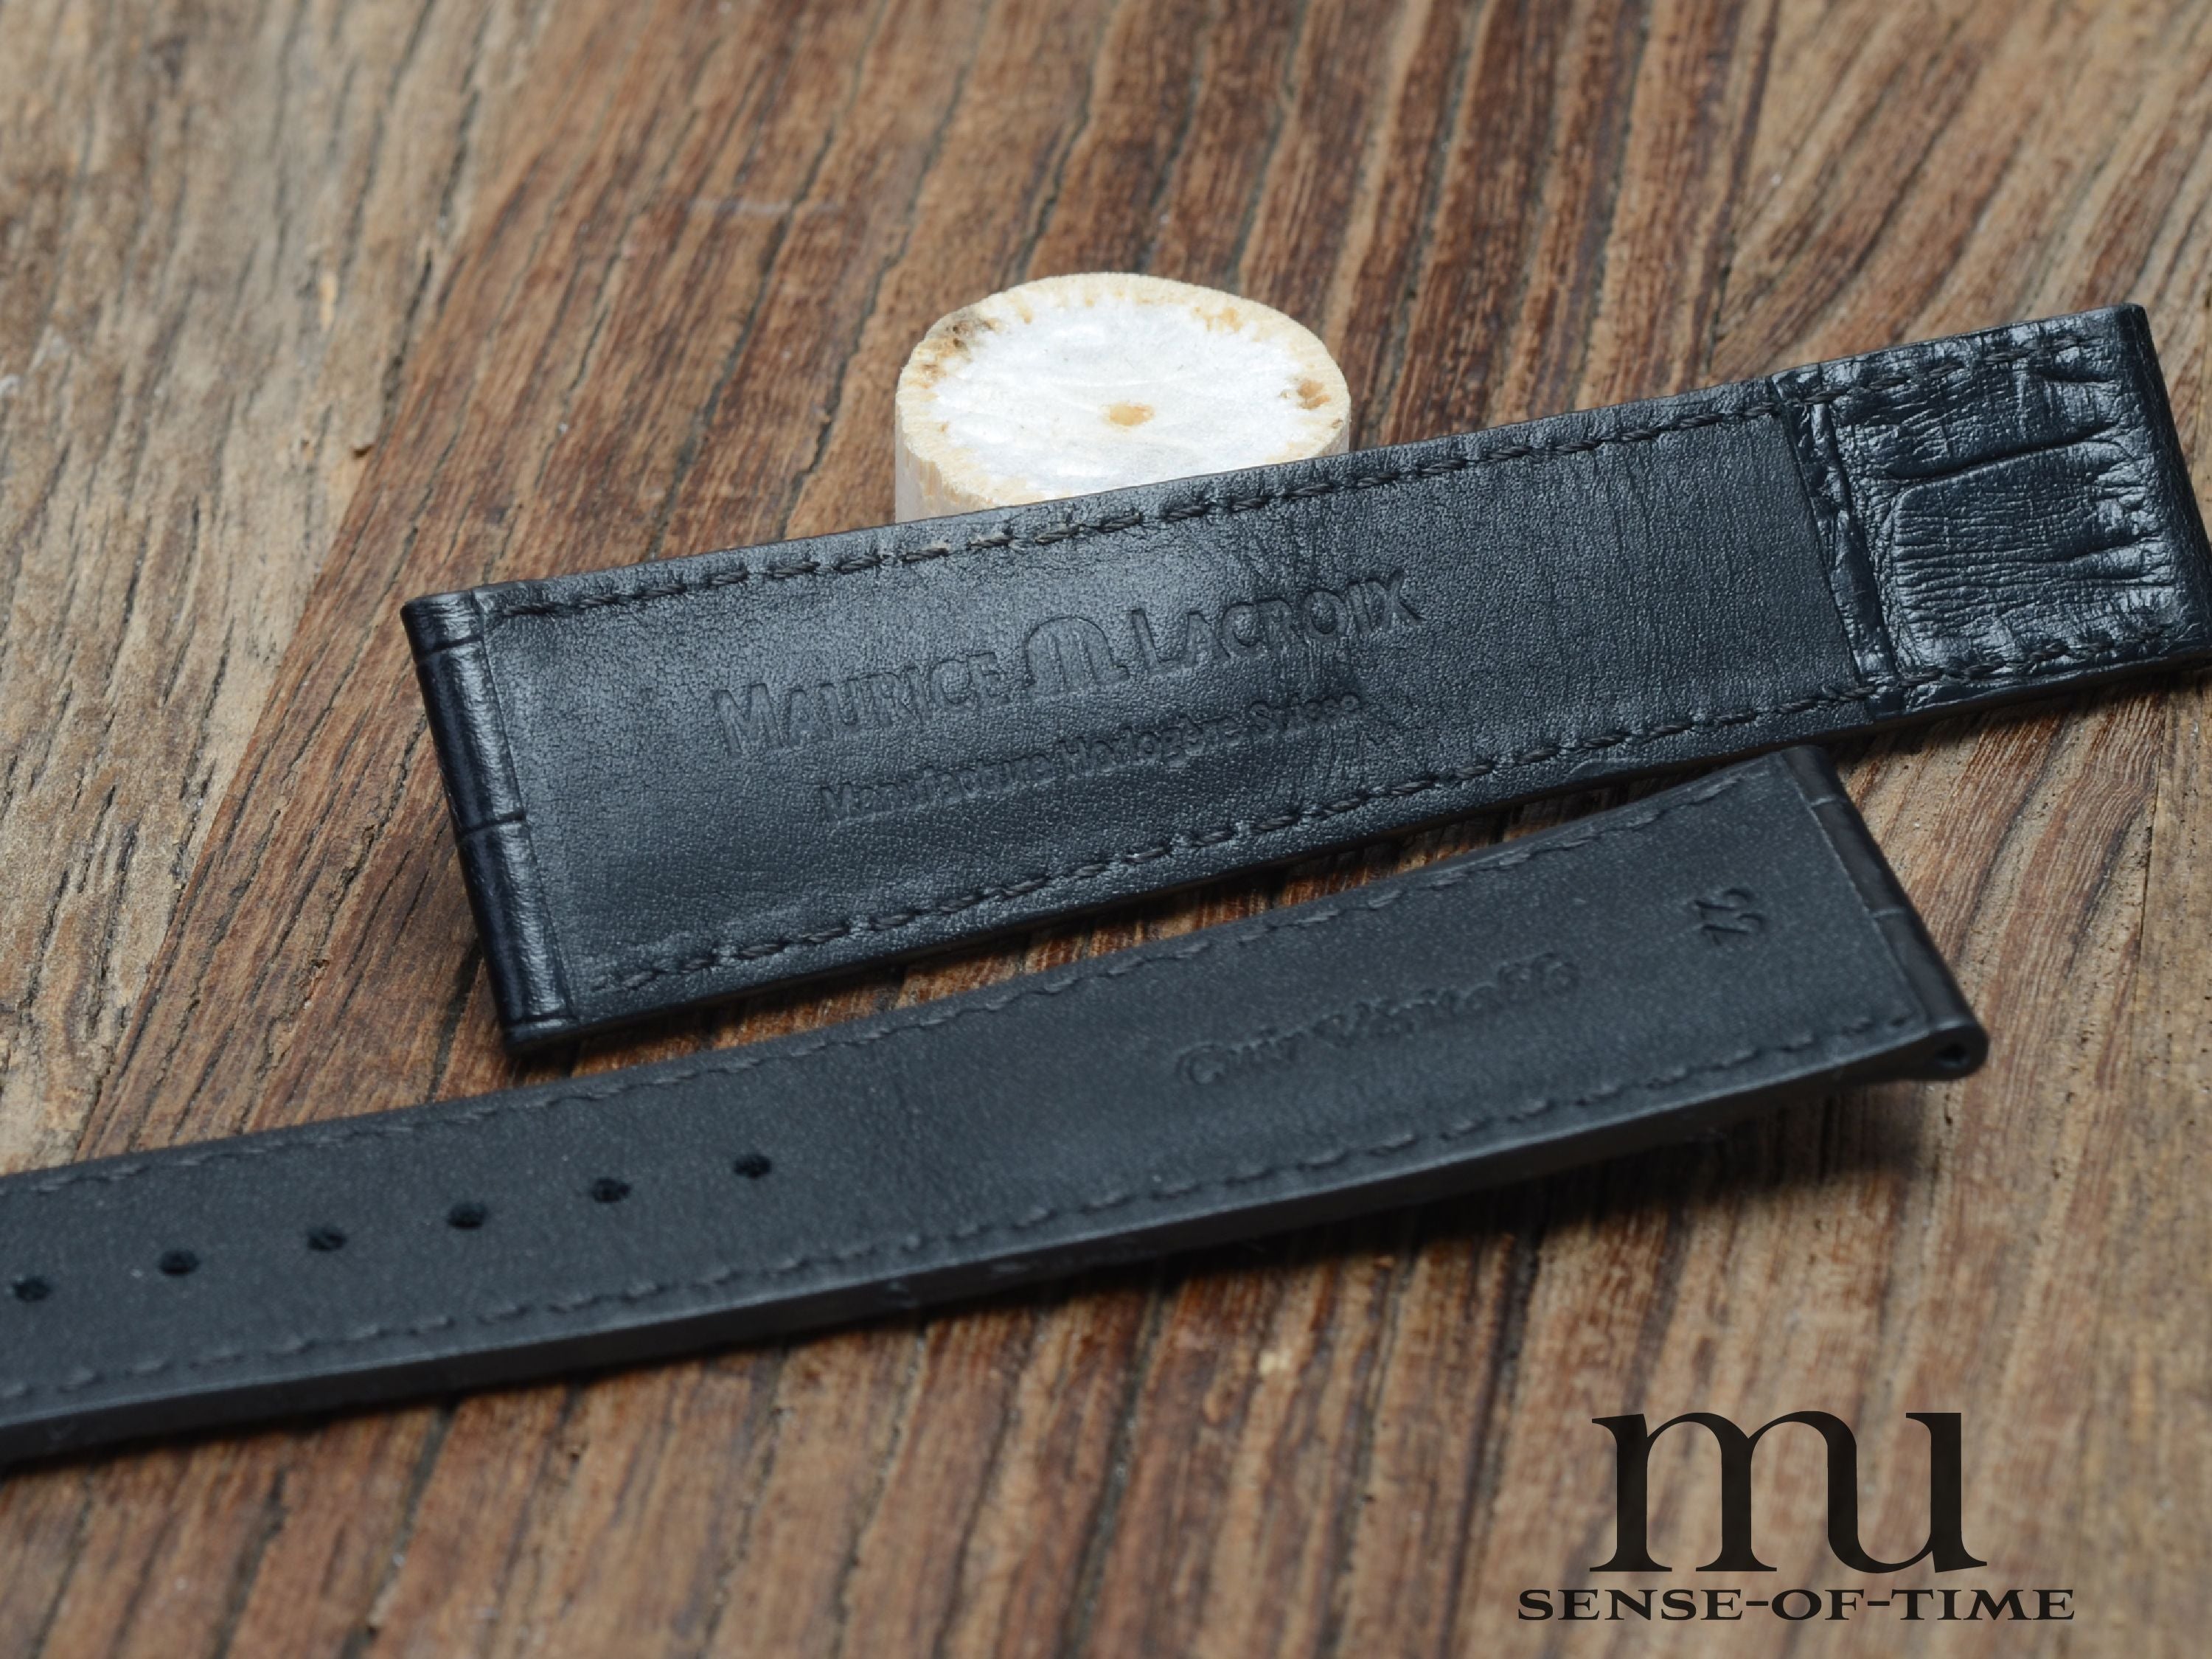 Zubehör: Maurice Lacroix Lederband für Faltschließe, schwarz, 22 mm, NOS